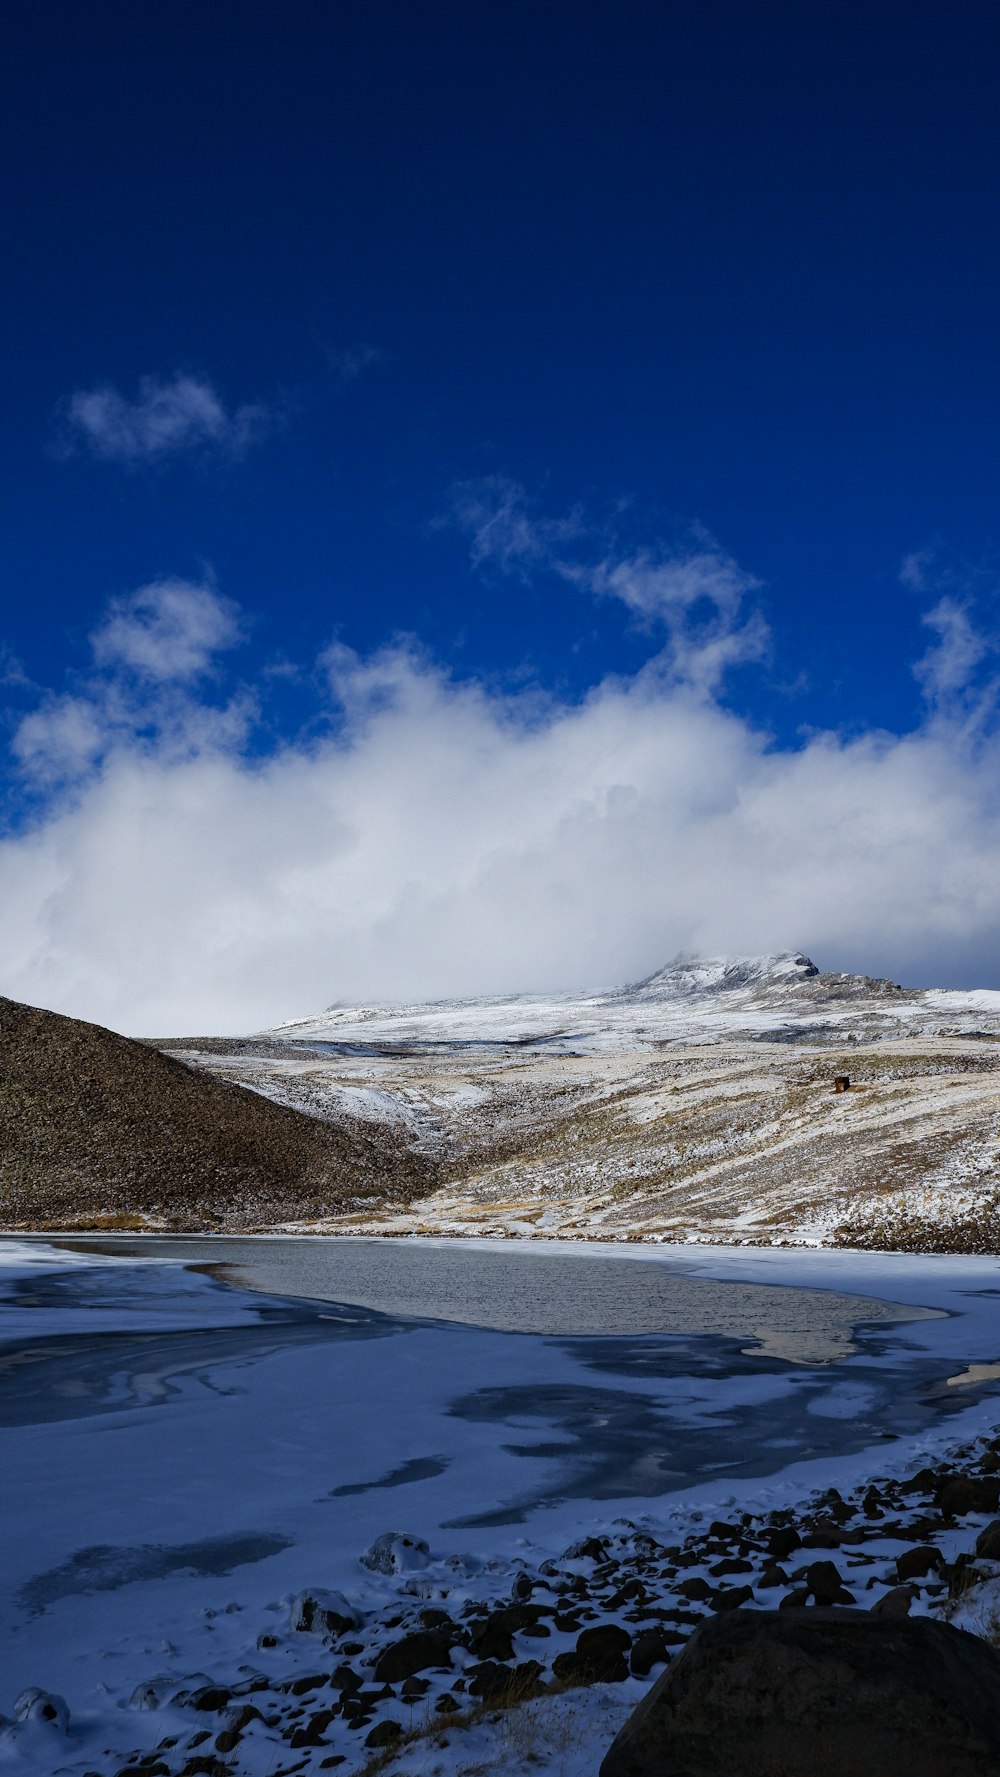 Eine verschneite Landschaft mit einem Gewässer und blauem Himmel